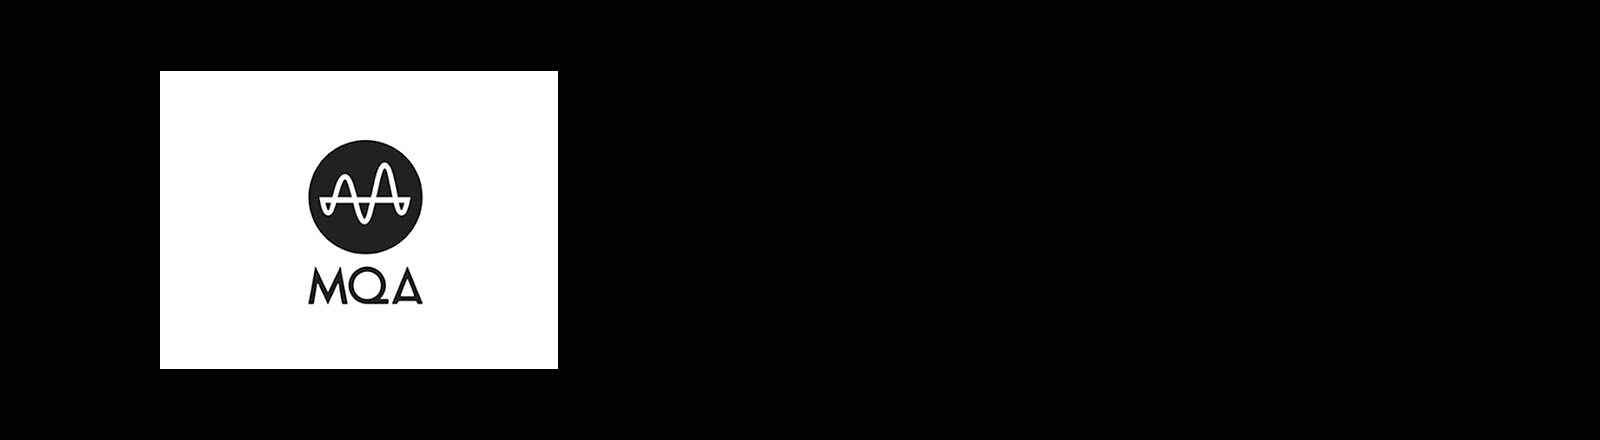 Εικόνα με το λογότυπο "MQA"